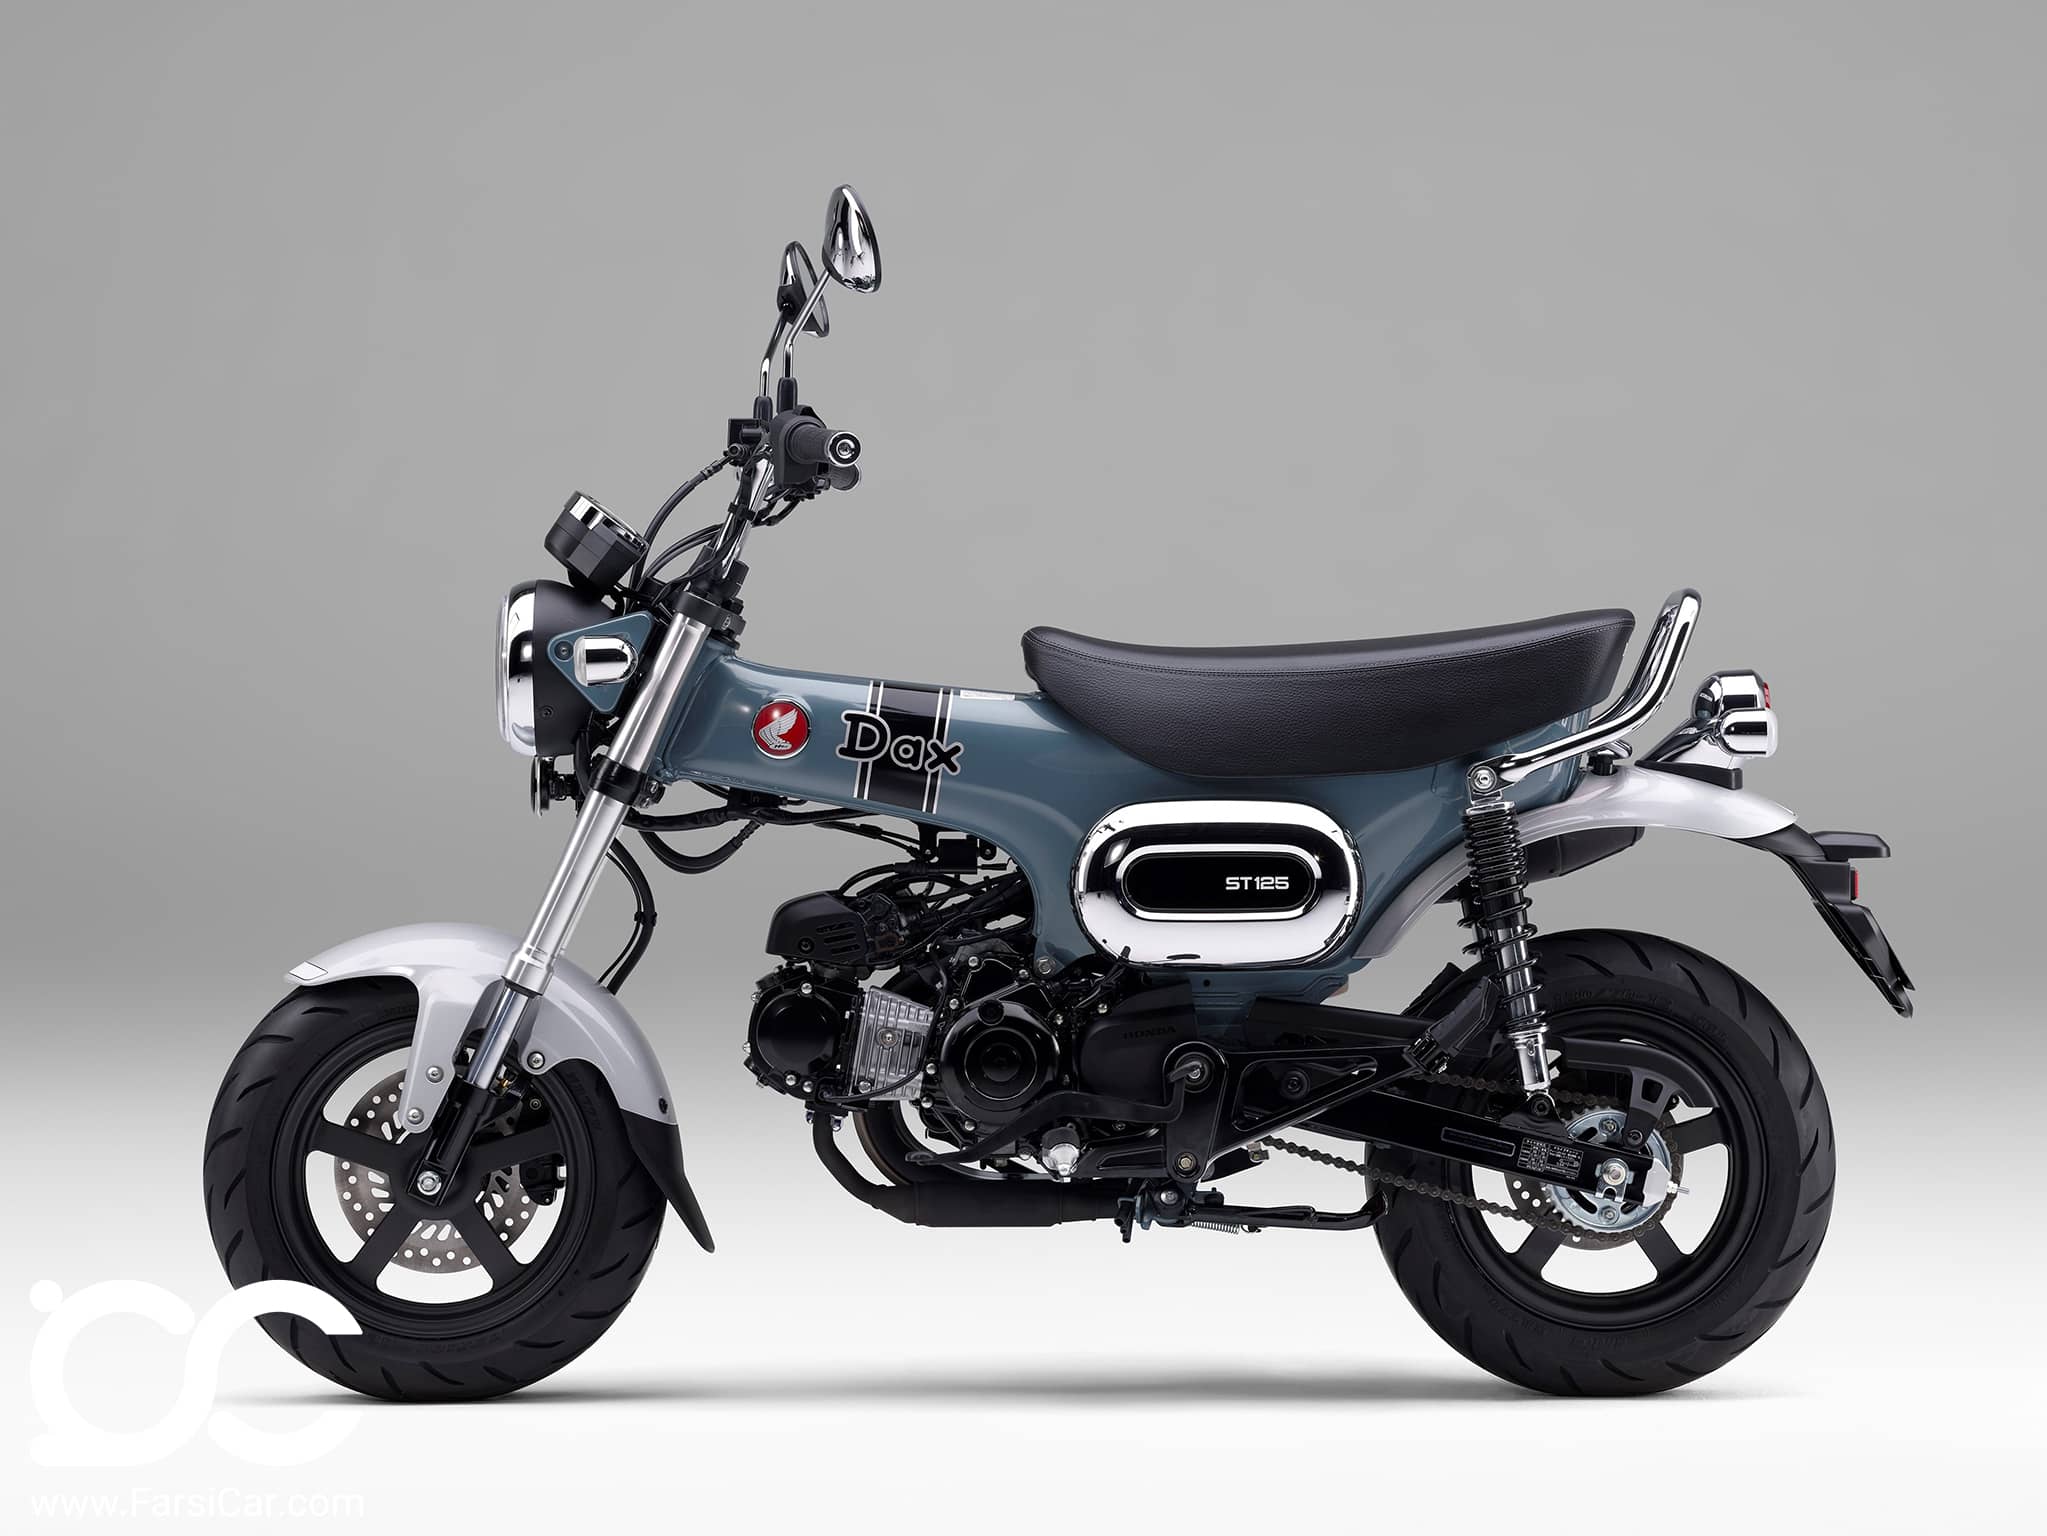 معرفی موتورسیکلت جدید هوندا دکس